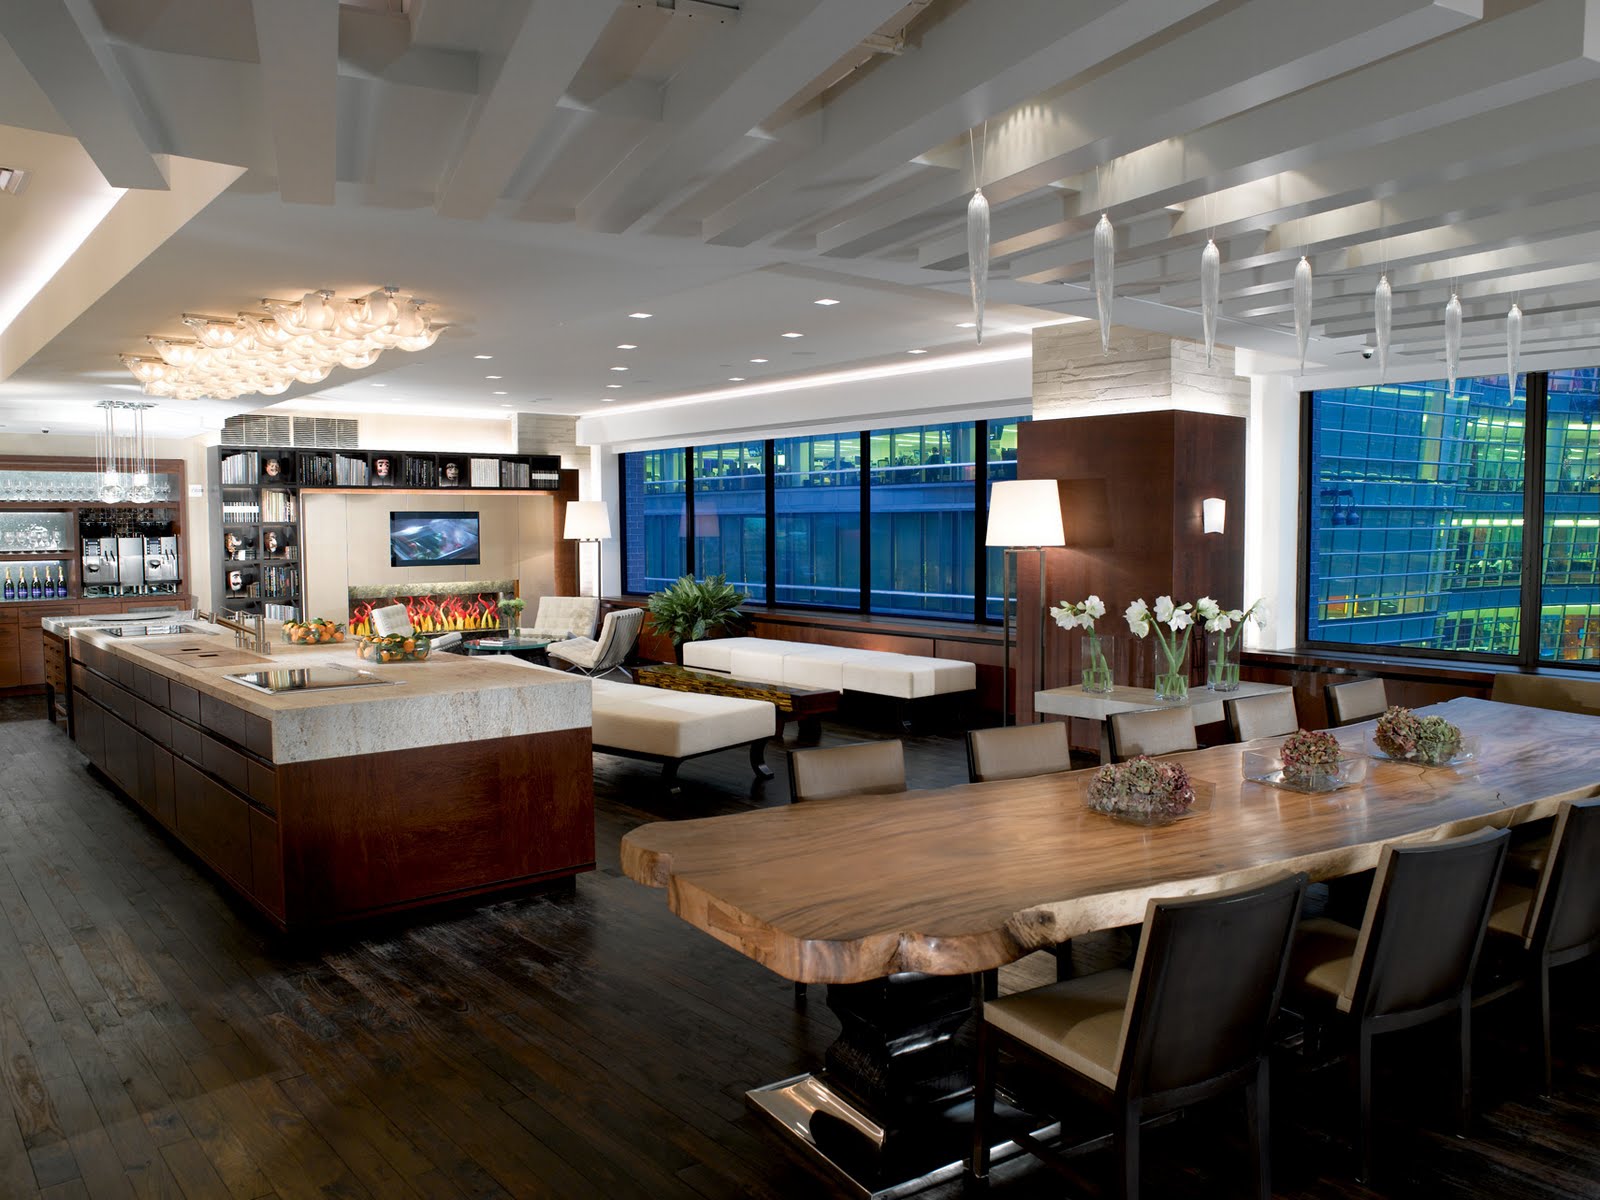 luxury kitchens designs on Interior Design  Luxury Kitchen Design Ideas